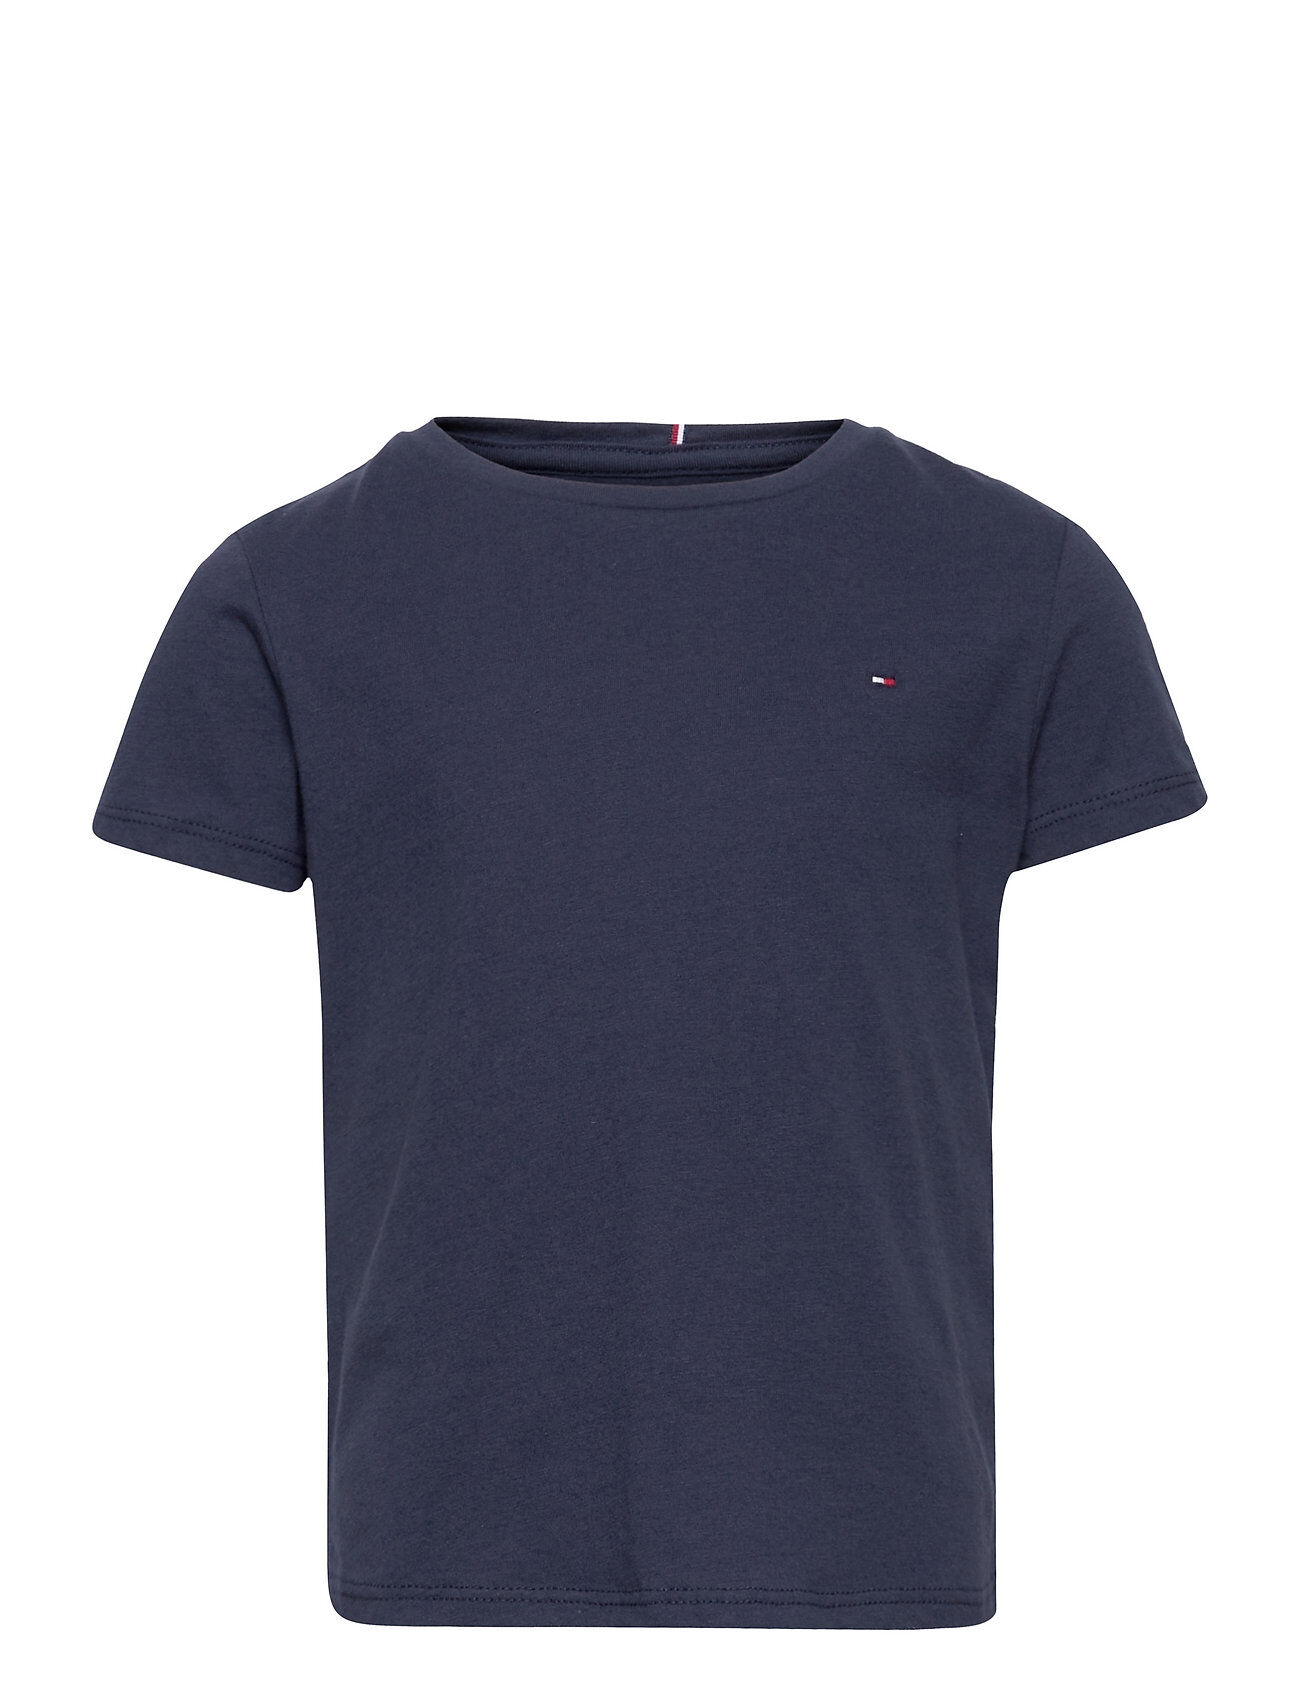 Tommy Hilfiger Essential Knit Top S/S T-shirts Short-sleeved Blå Tommy Hilfiger